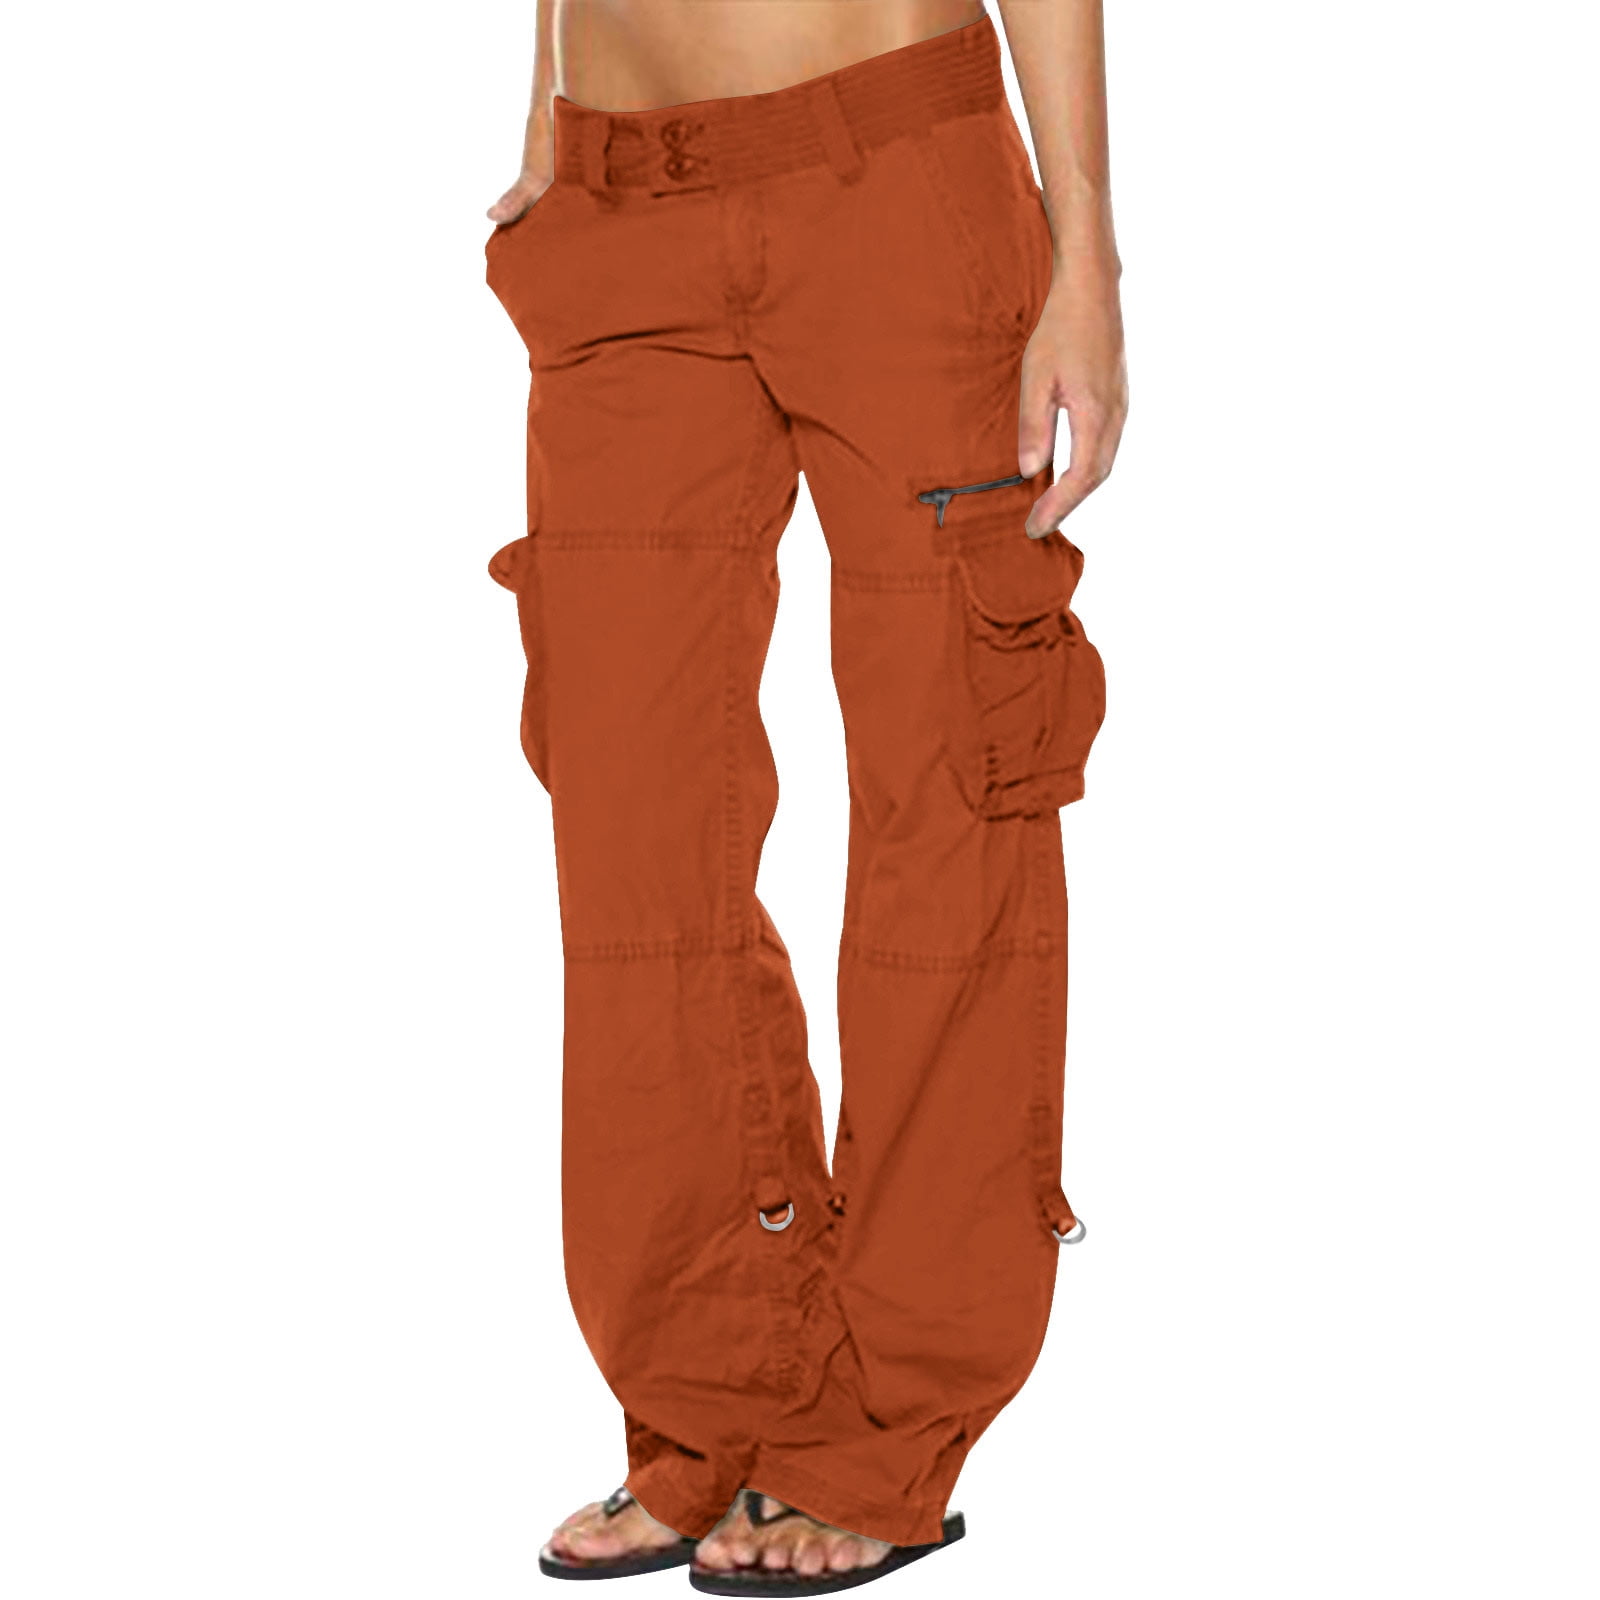 ZXHACSJ Women Low Waist Baggy Cargo Pants Loose Pocket Jogger Trousers  Hippie Punk Streetwear Orange S 